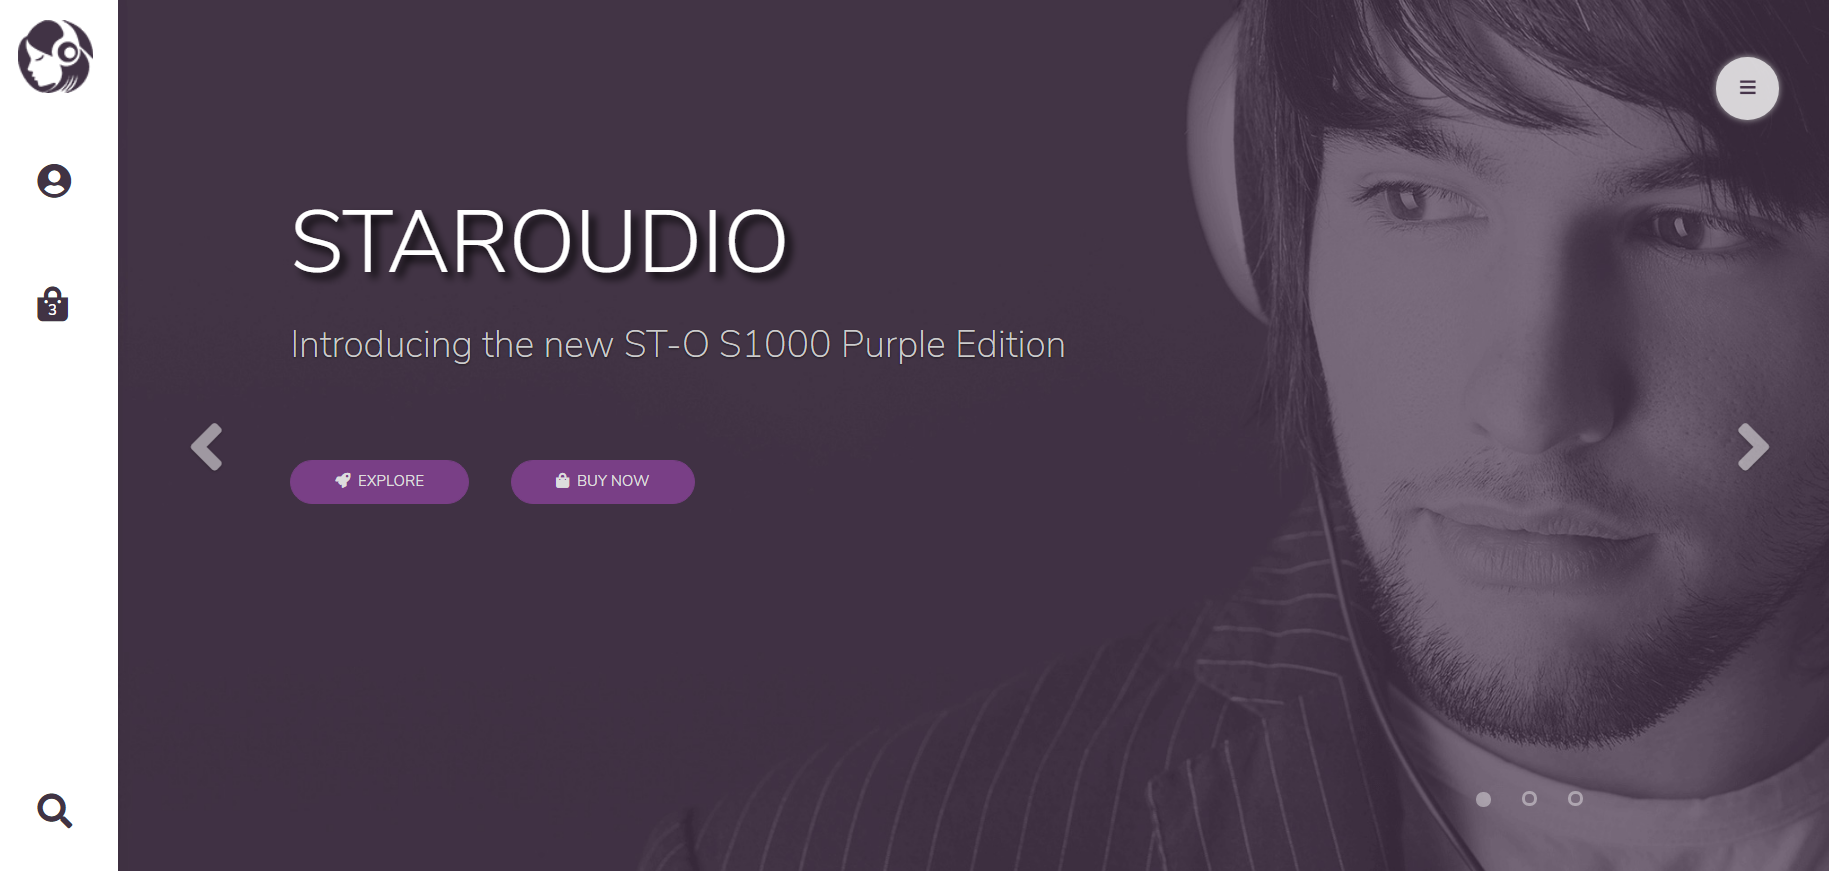 bootstra紫色宽屏样式耳机商城企业网站模板代码下载